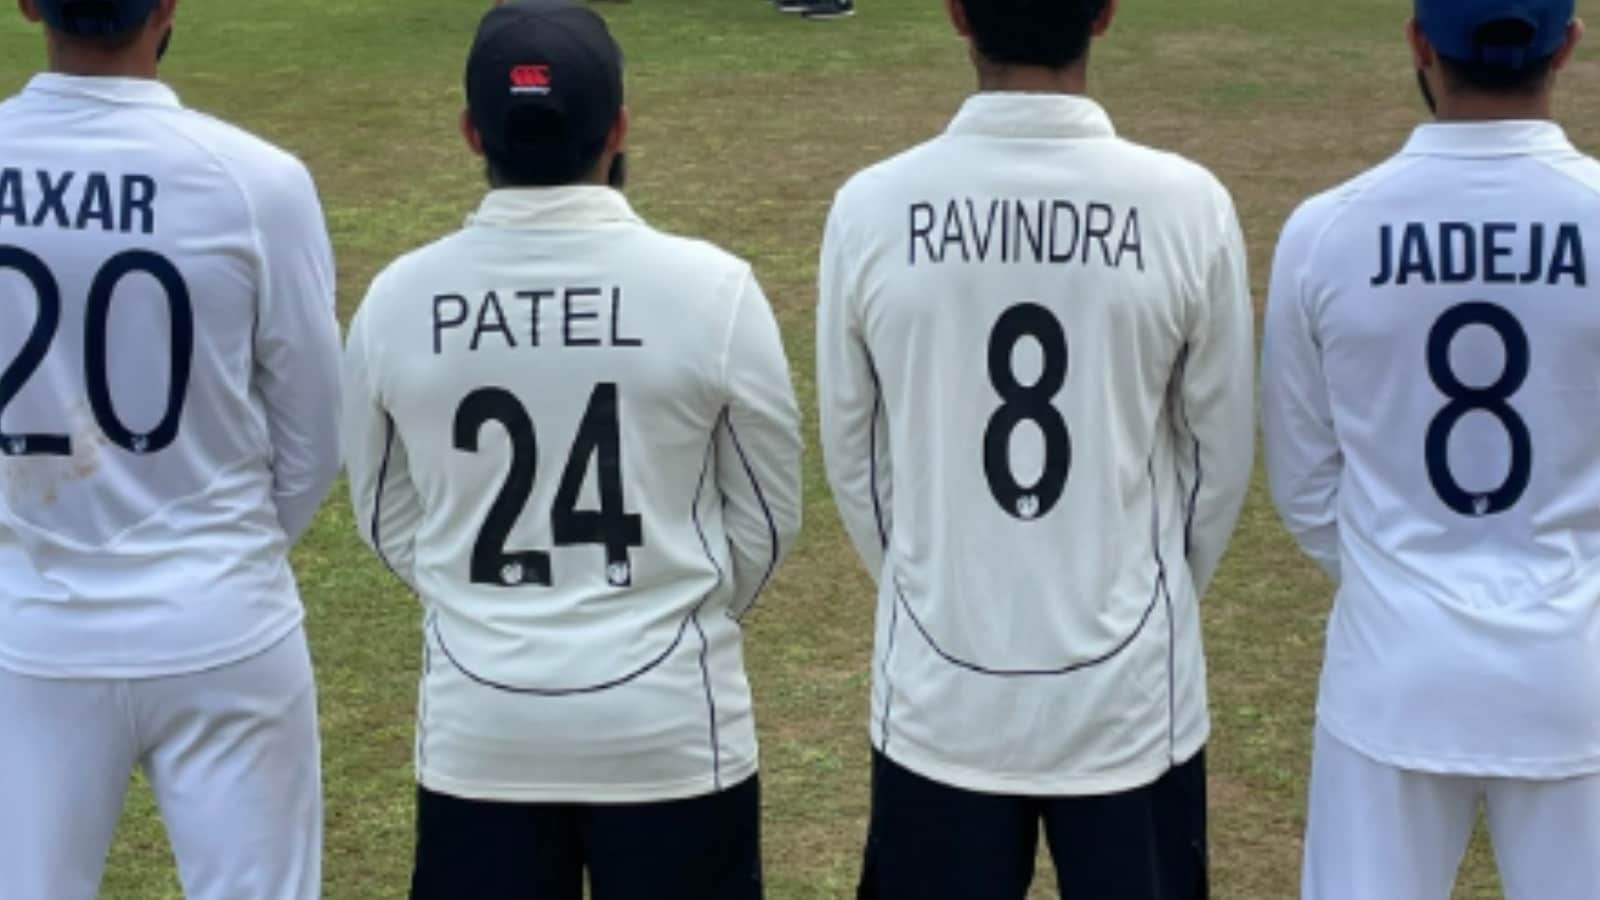 Axar, Patel, Ravindra, Jadeja: Ashwin&#39;s Pic After Test Win Shows How Cricket  Unites Us